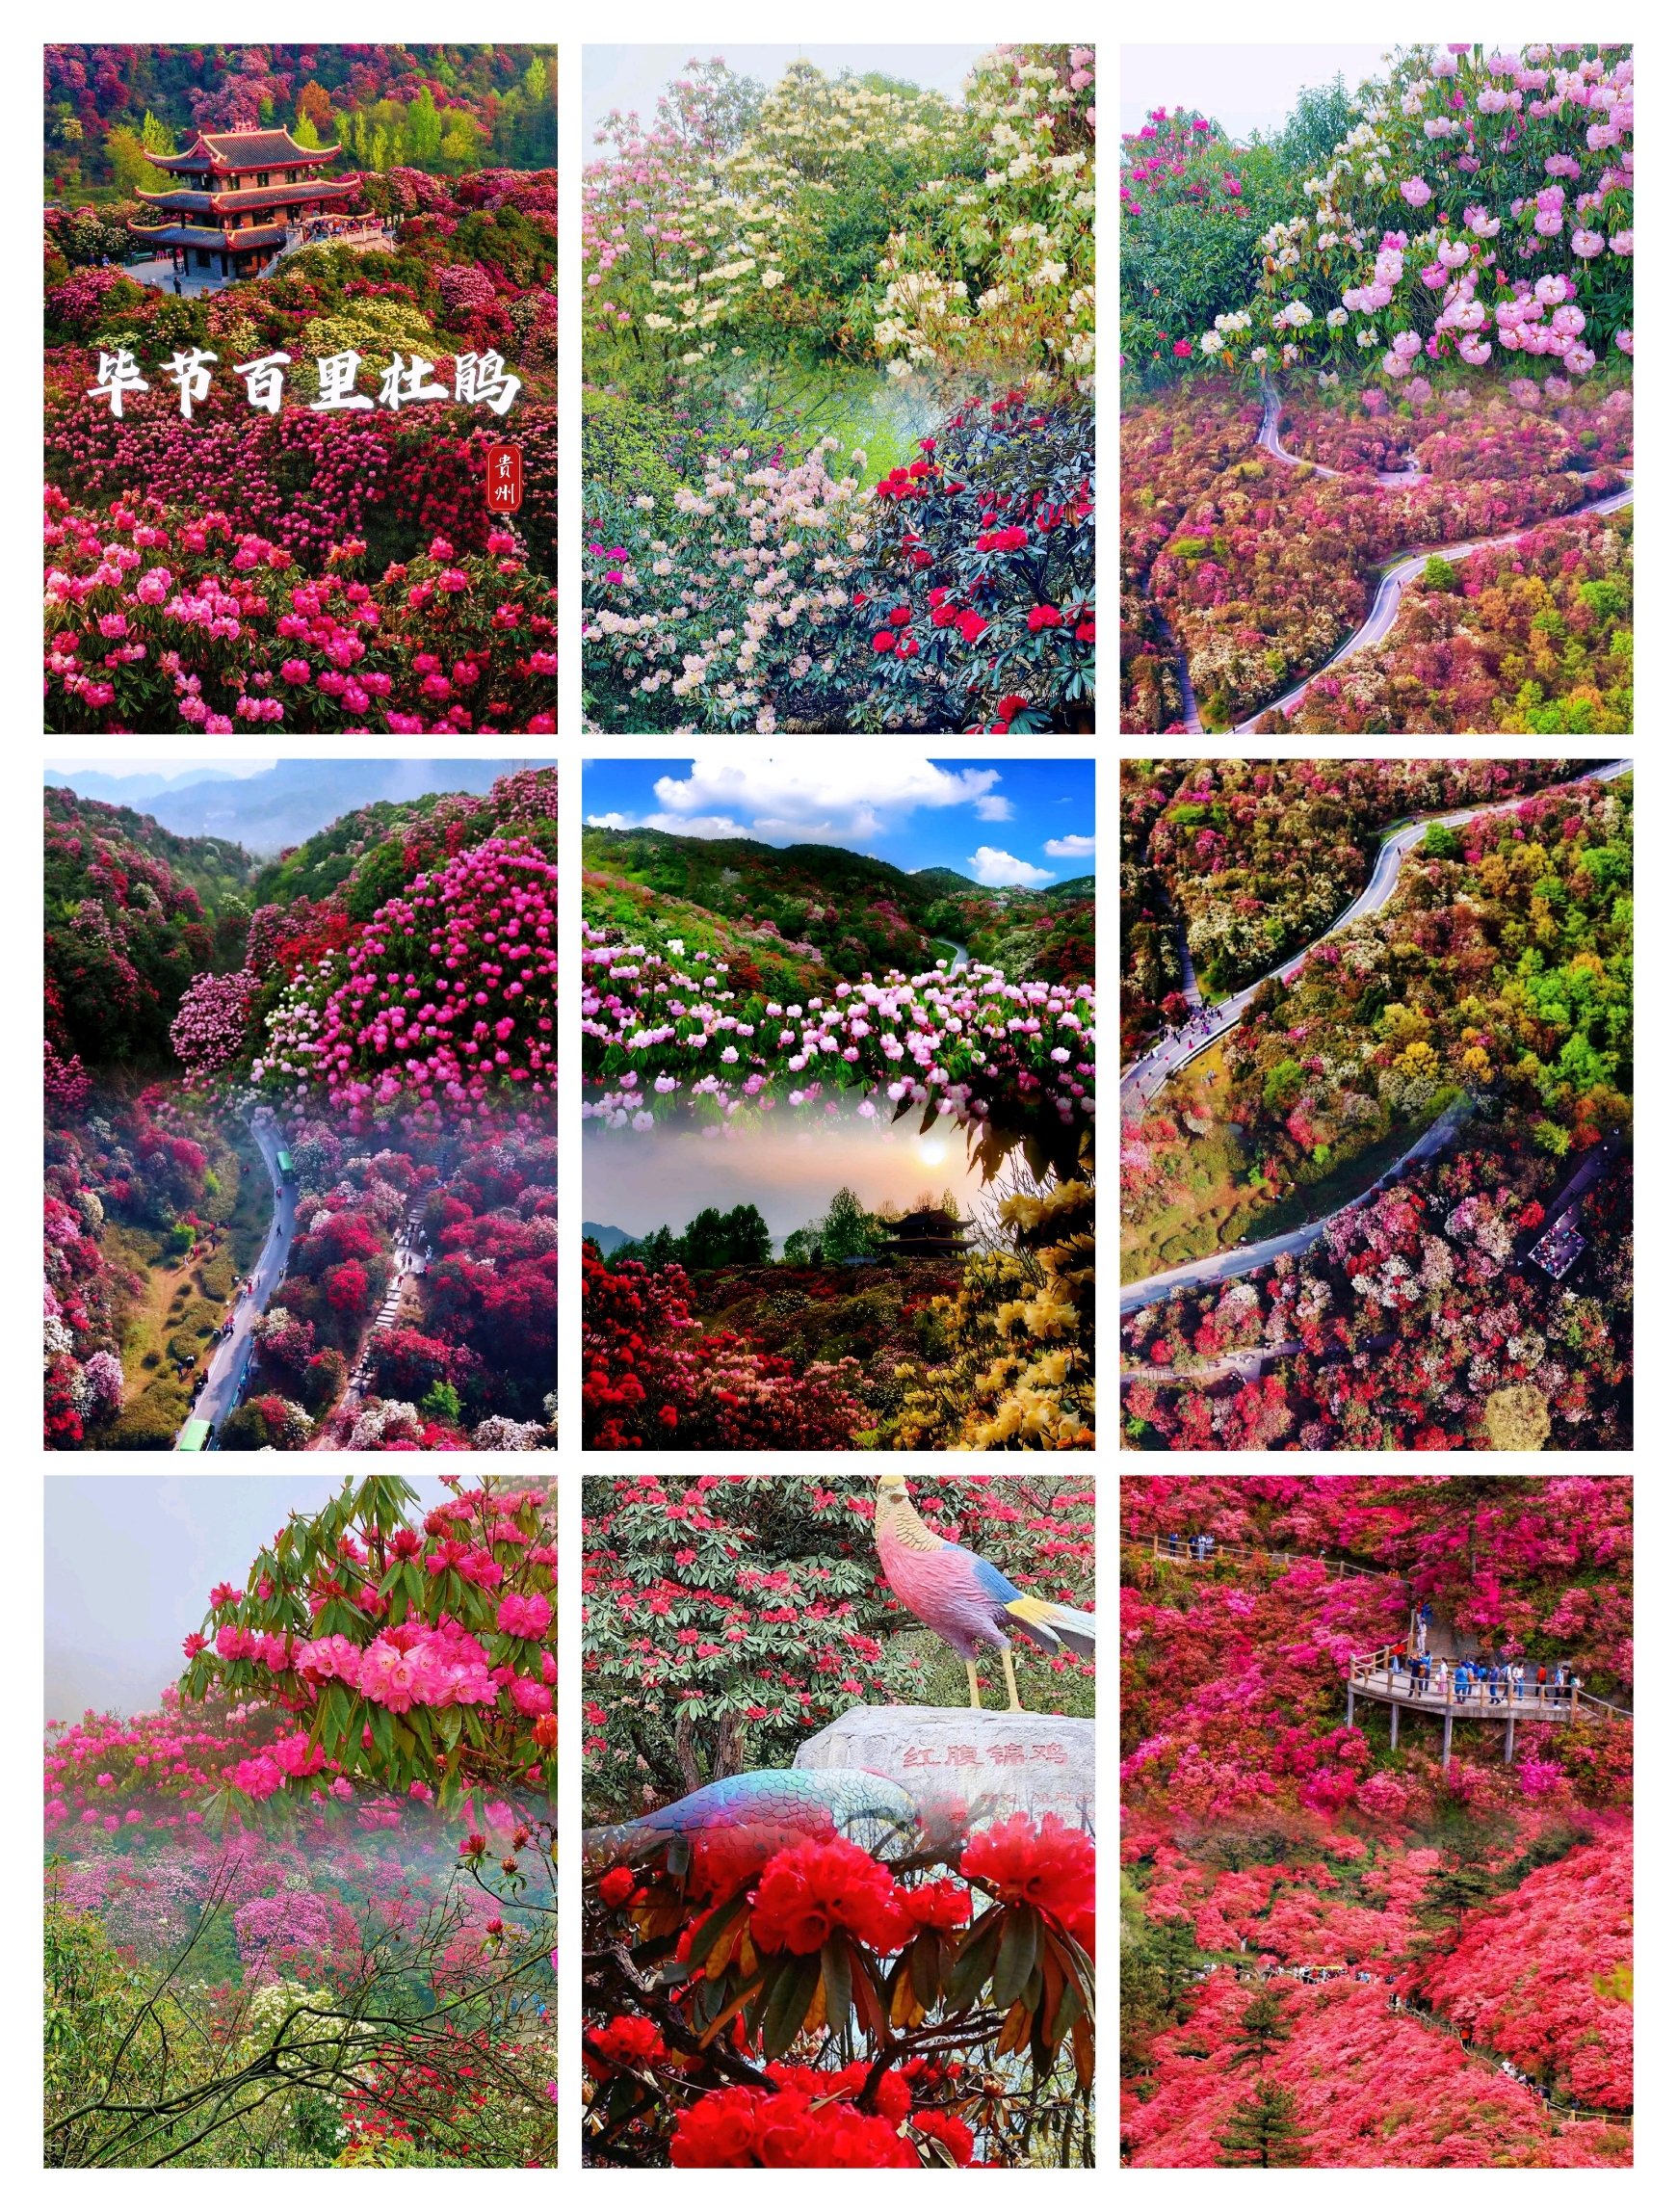 🌺贵州百里杜鹃是中国最美的杜鹃花景区之一